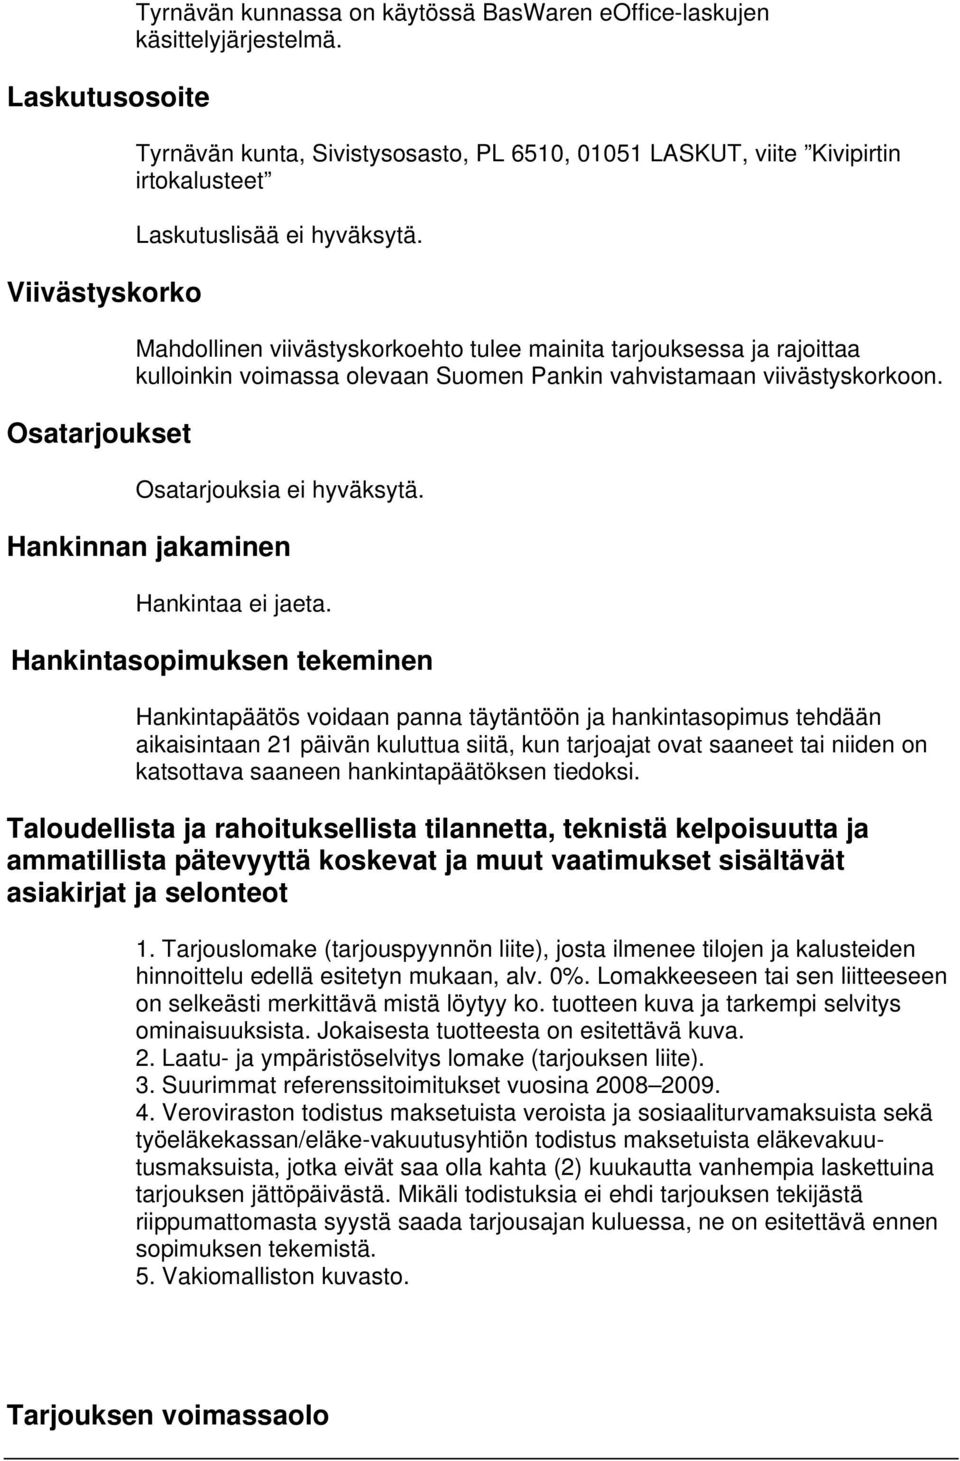 Mahdollinen viivästyskorkoehto tulee mainita tarjouksessa ja rajoittaa kulloinkin voimassa olevaan Suomen Pankin vahvistamaan viivästyskorkoon. Osatarjouksia ei hyväksytä.